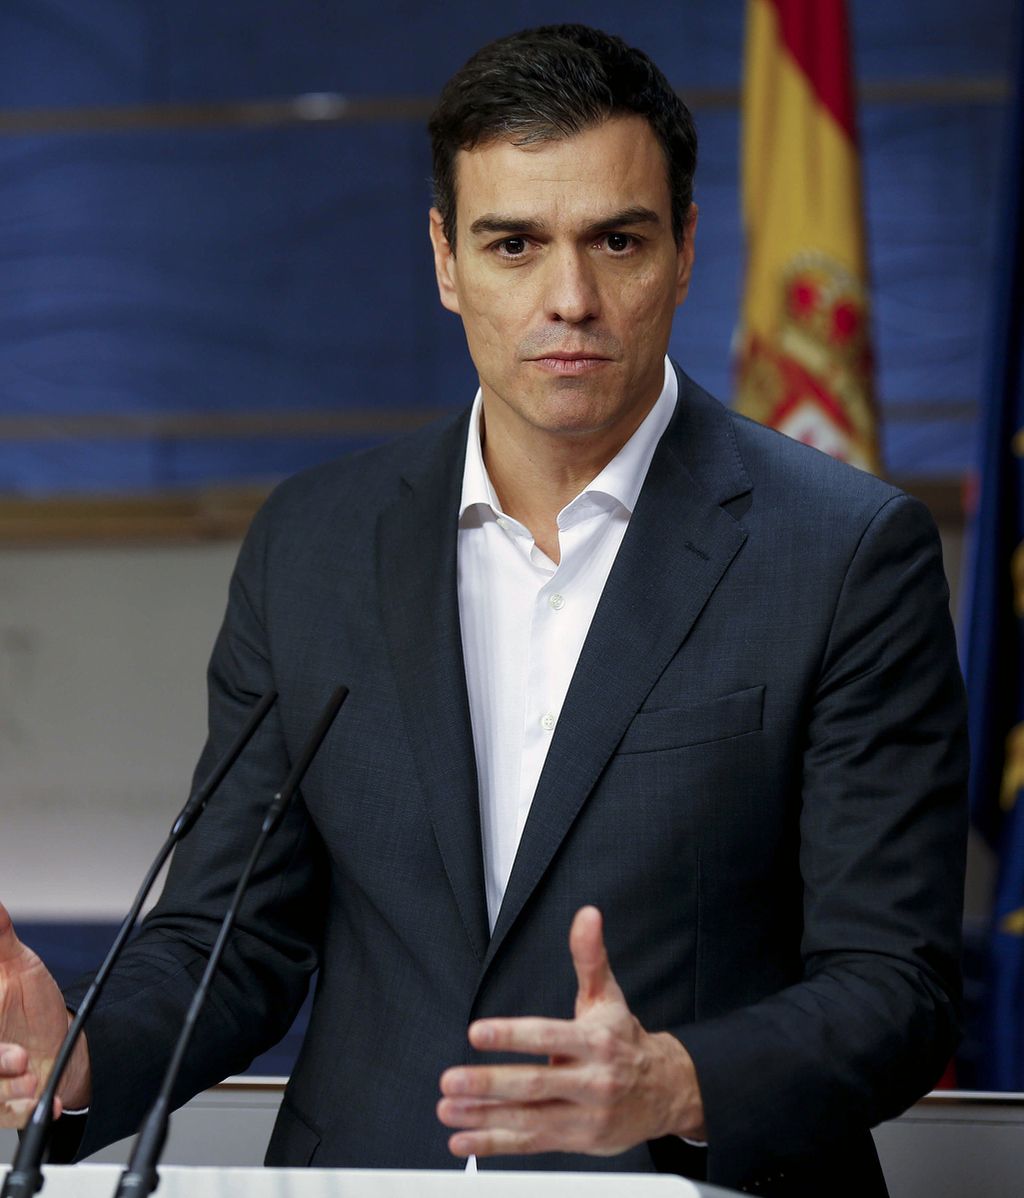 El PSOE asegura que "hay mimbres" para una "alternativa progresista"